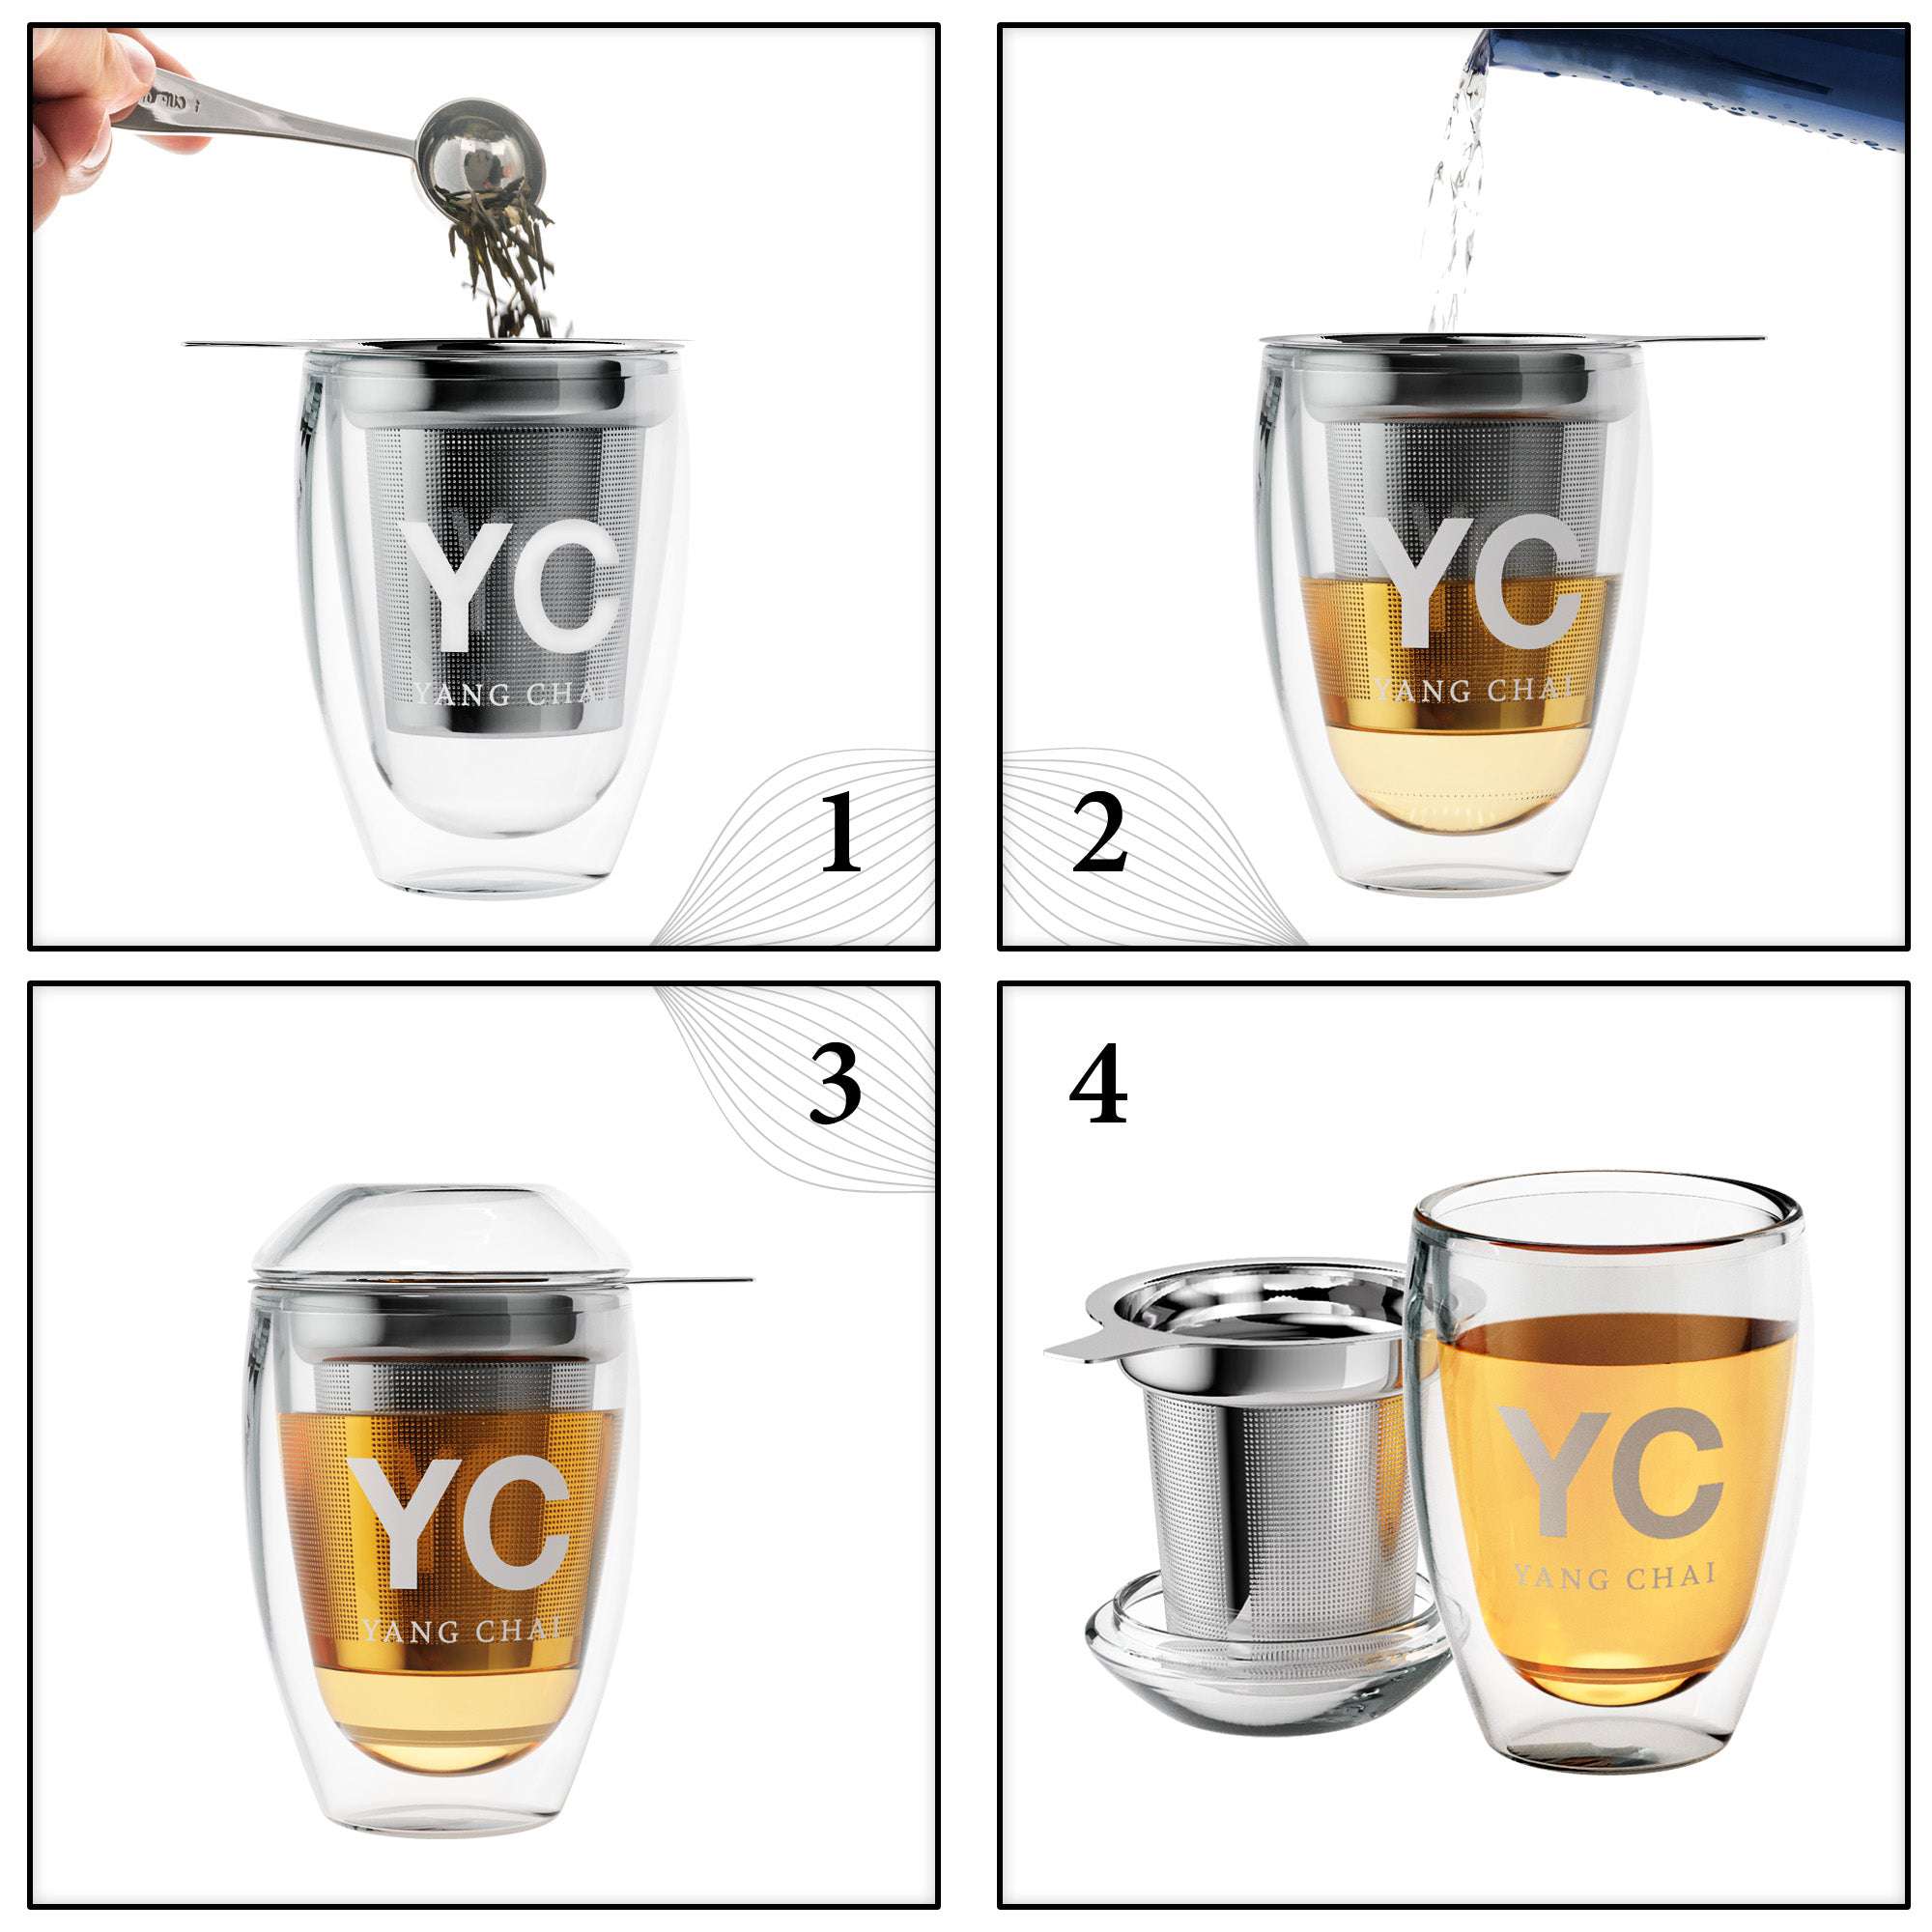 YC Yang Chai Teeglas Magus mit Sieb - Set